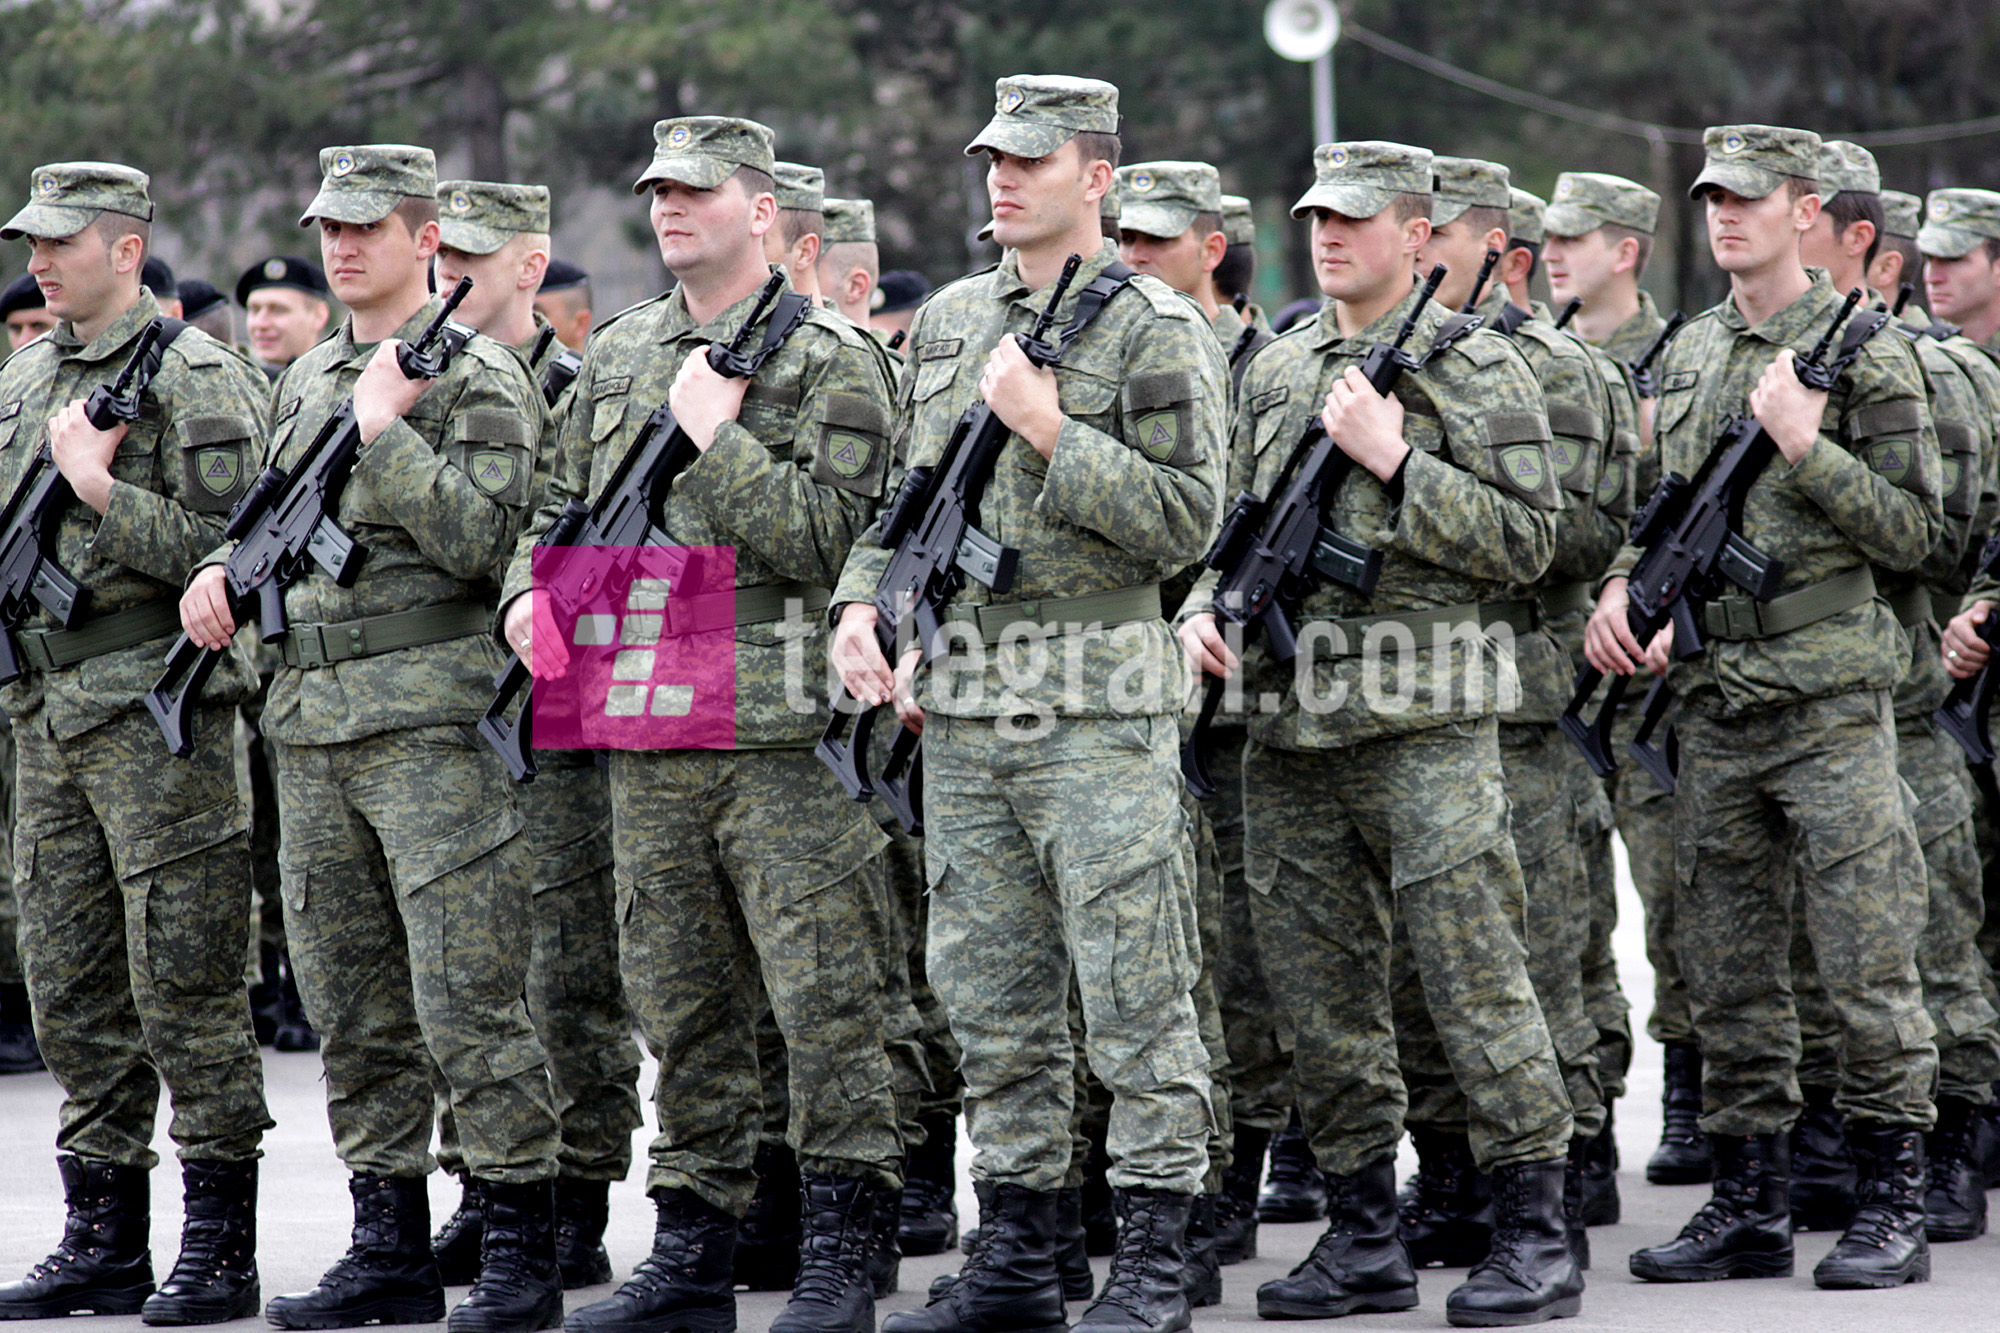 Ushtria e Kosovës domosdoshmëri, si përgjigje ndaj pretendimeve territoriale të Serbisë